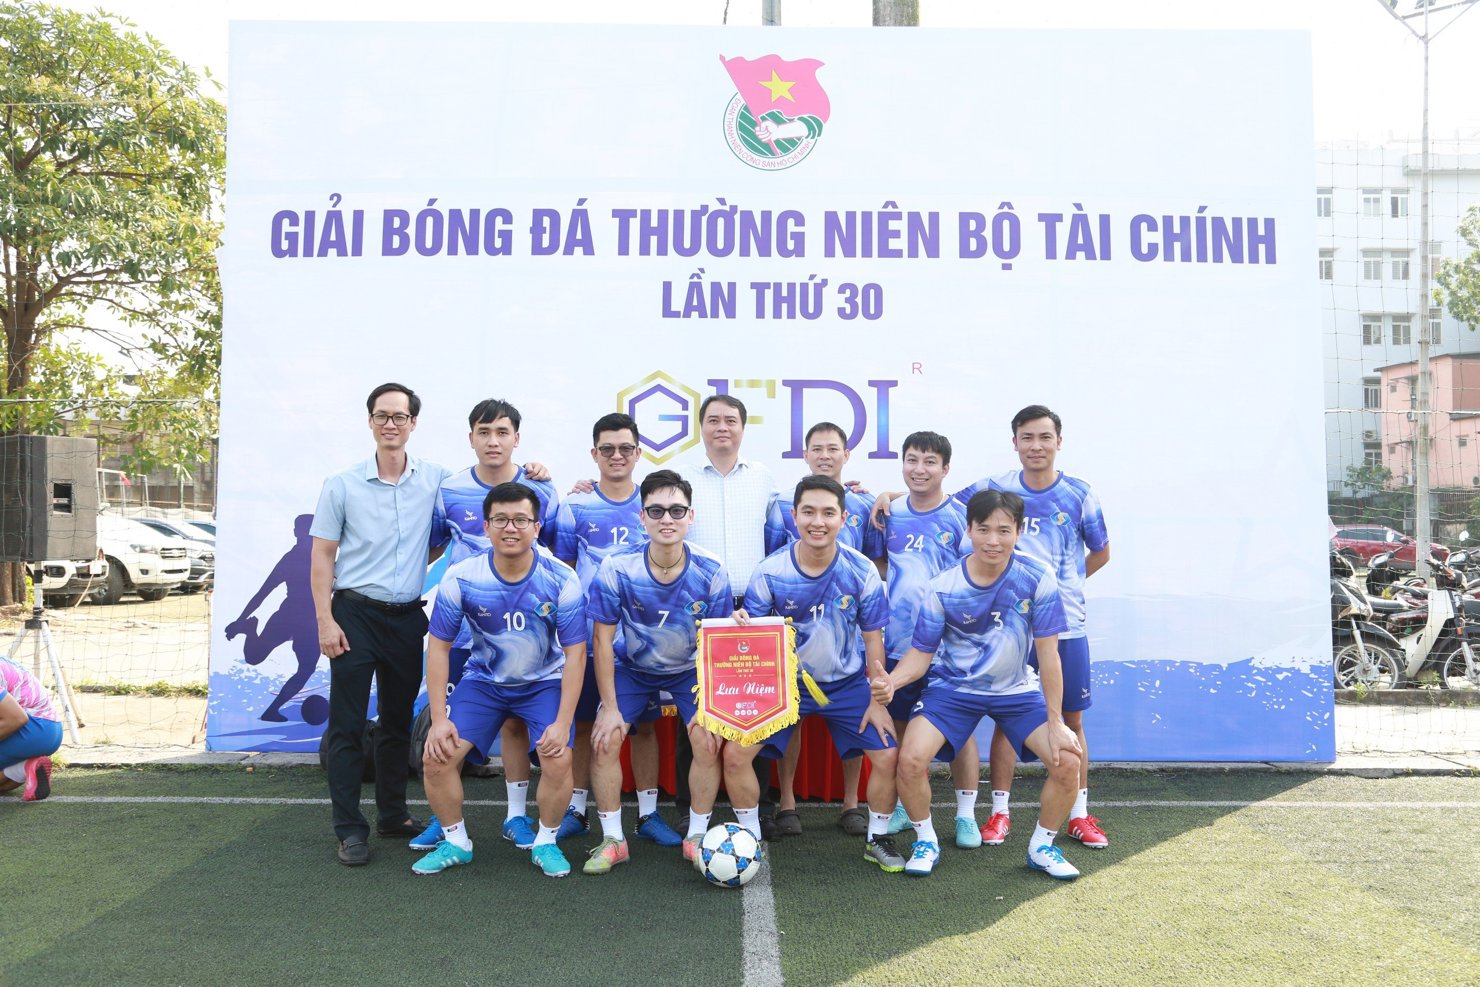 Đoàn Thanh niên Bộ Tài chính khai mạc Giải Bóng đá thường niên lần thứ 30 - Ảnh 1